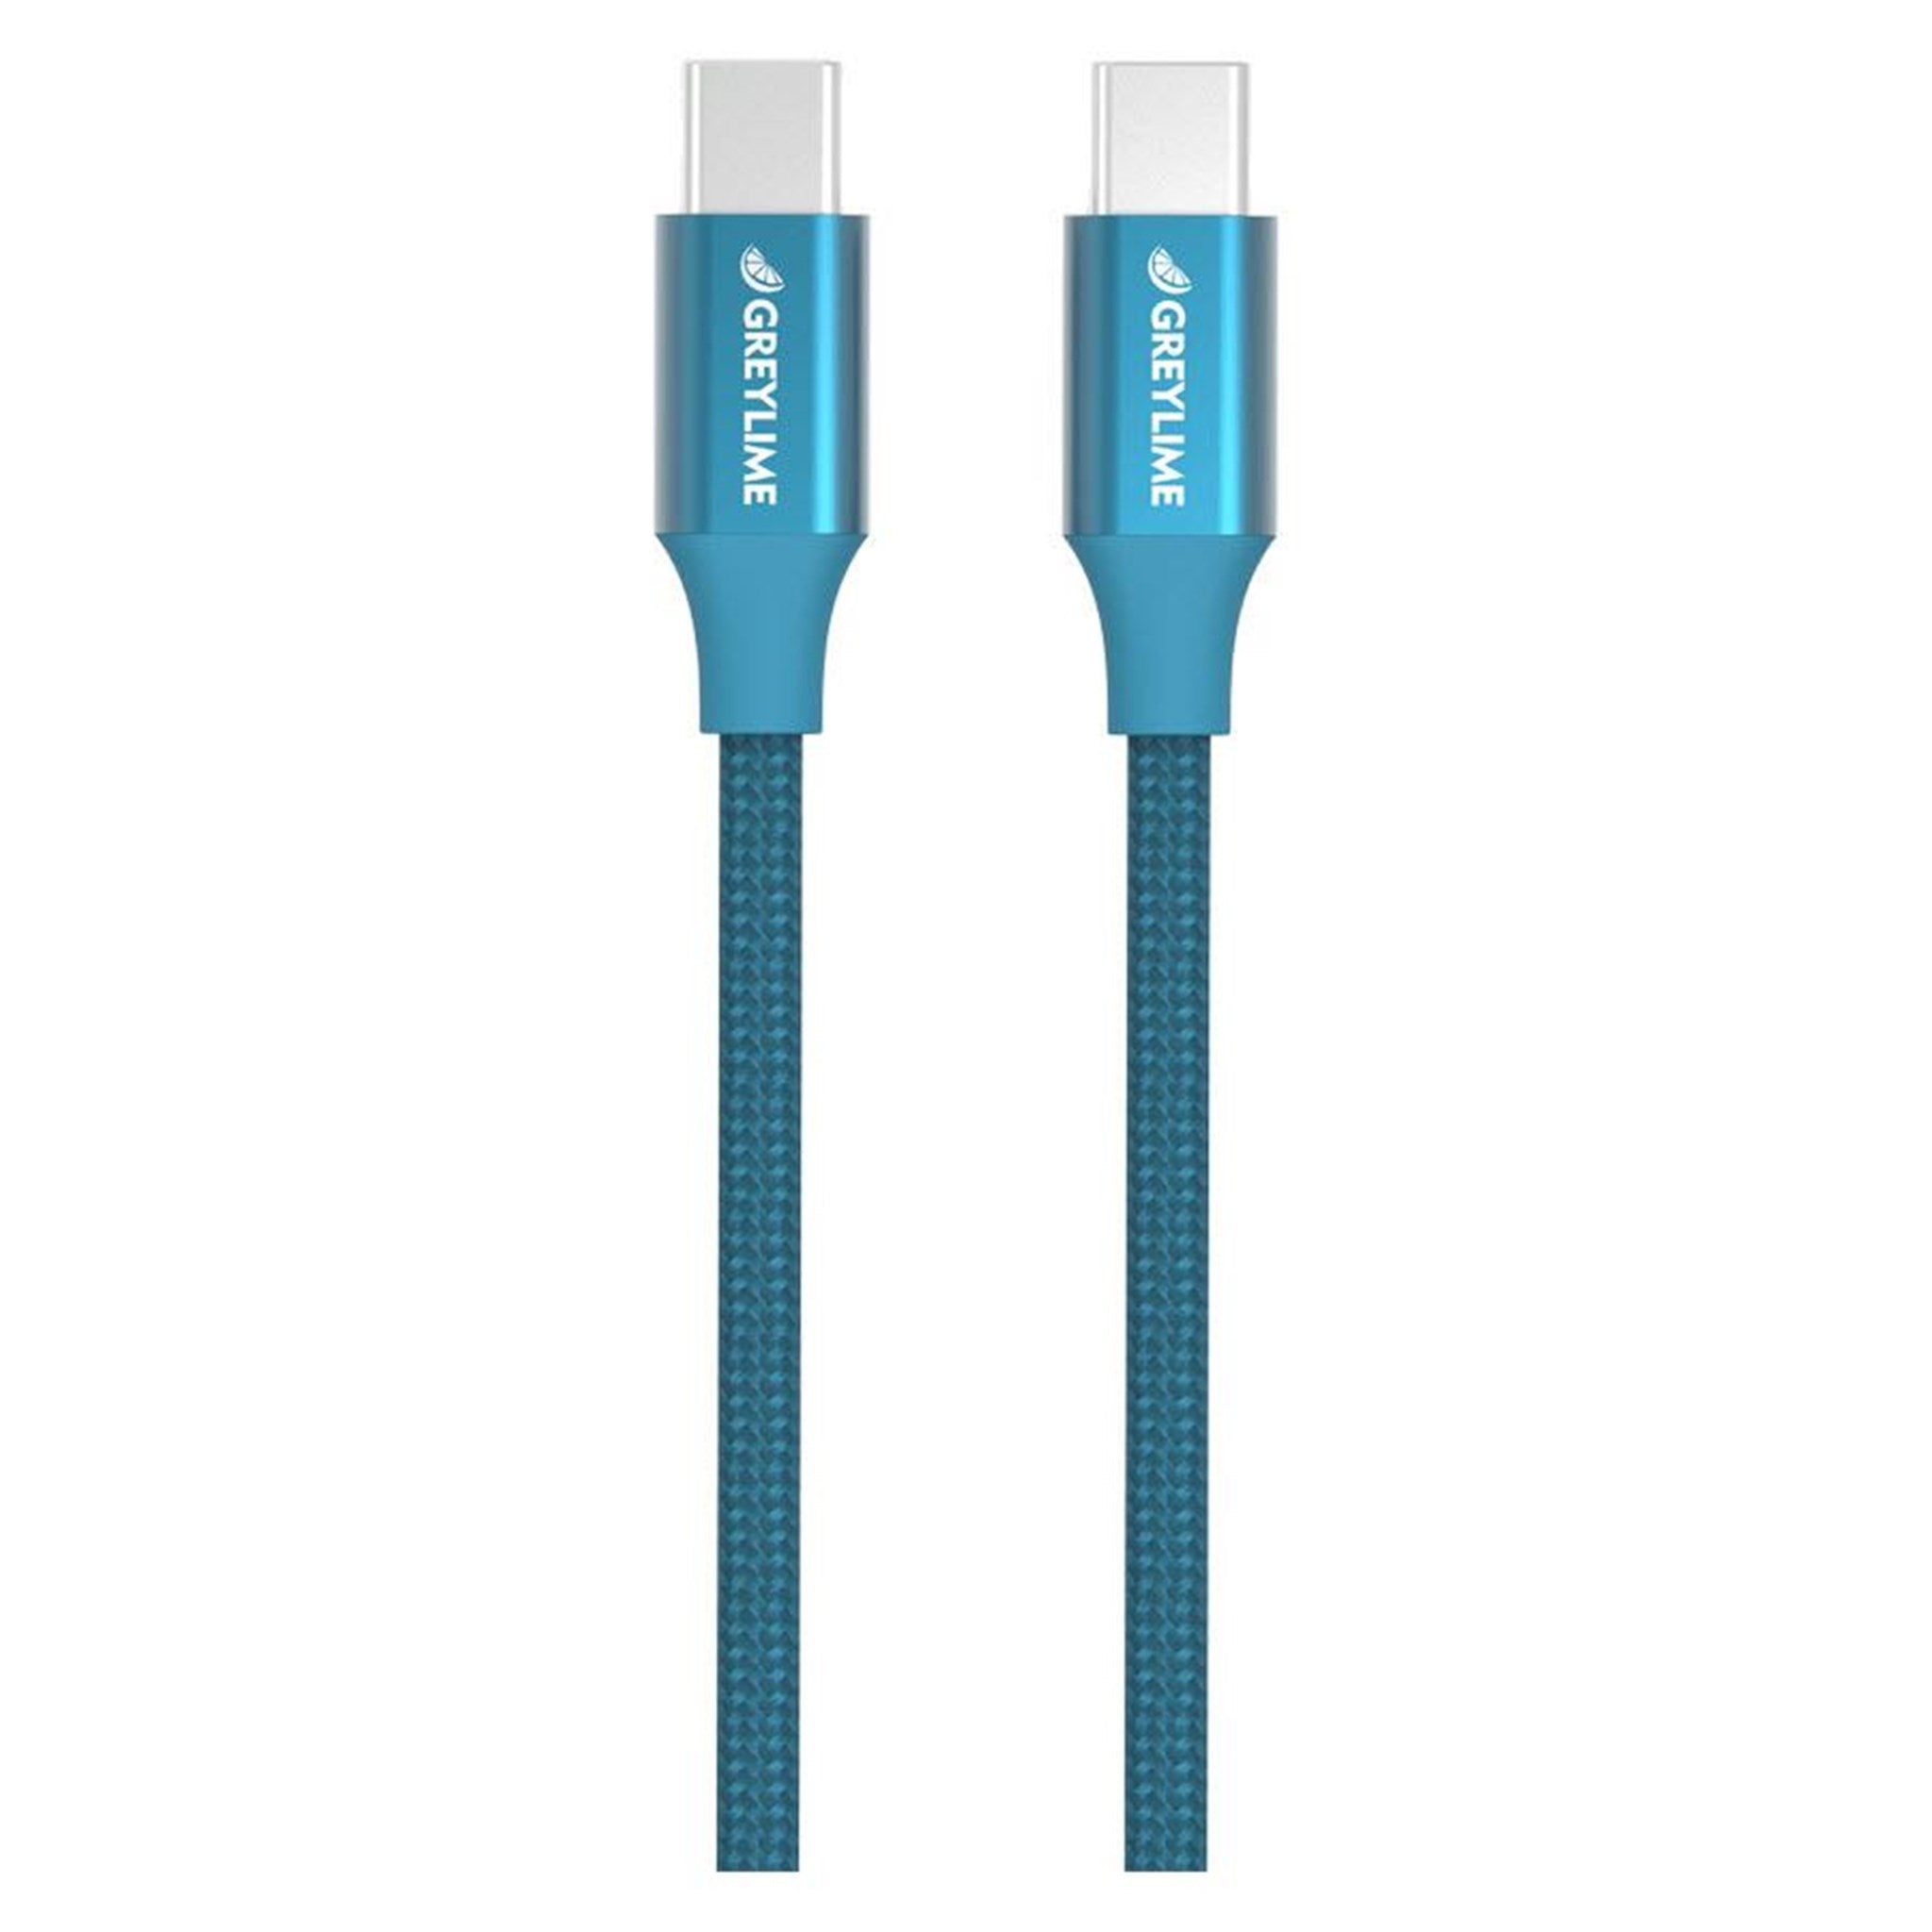 Billede af GreyLime Braided USB-C til USB-C Kabel Blå 1 m hos GreyLime